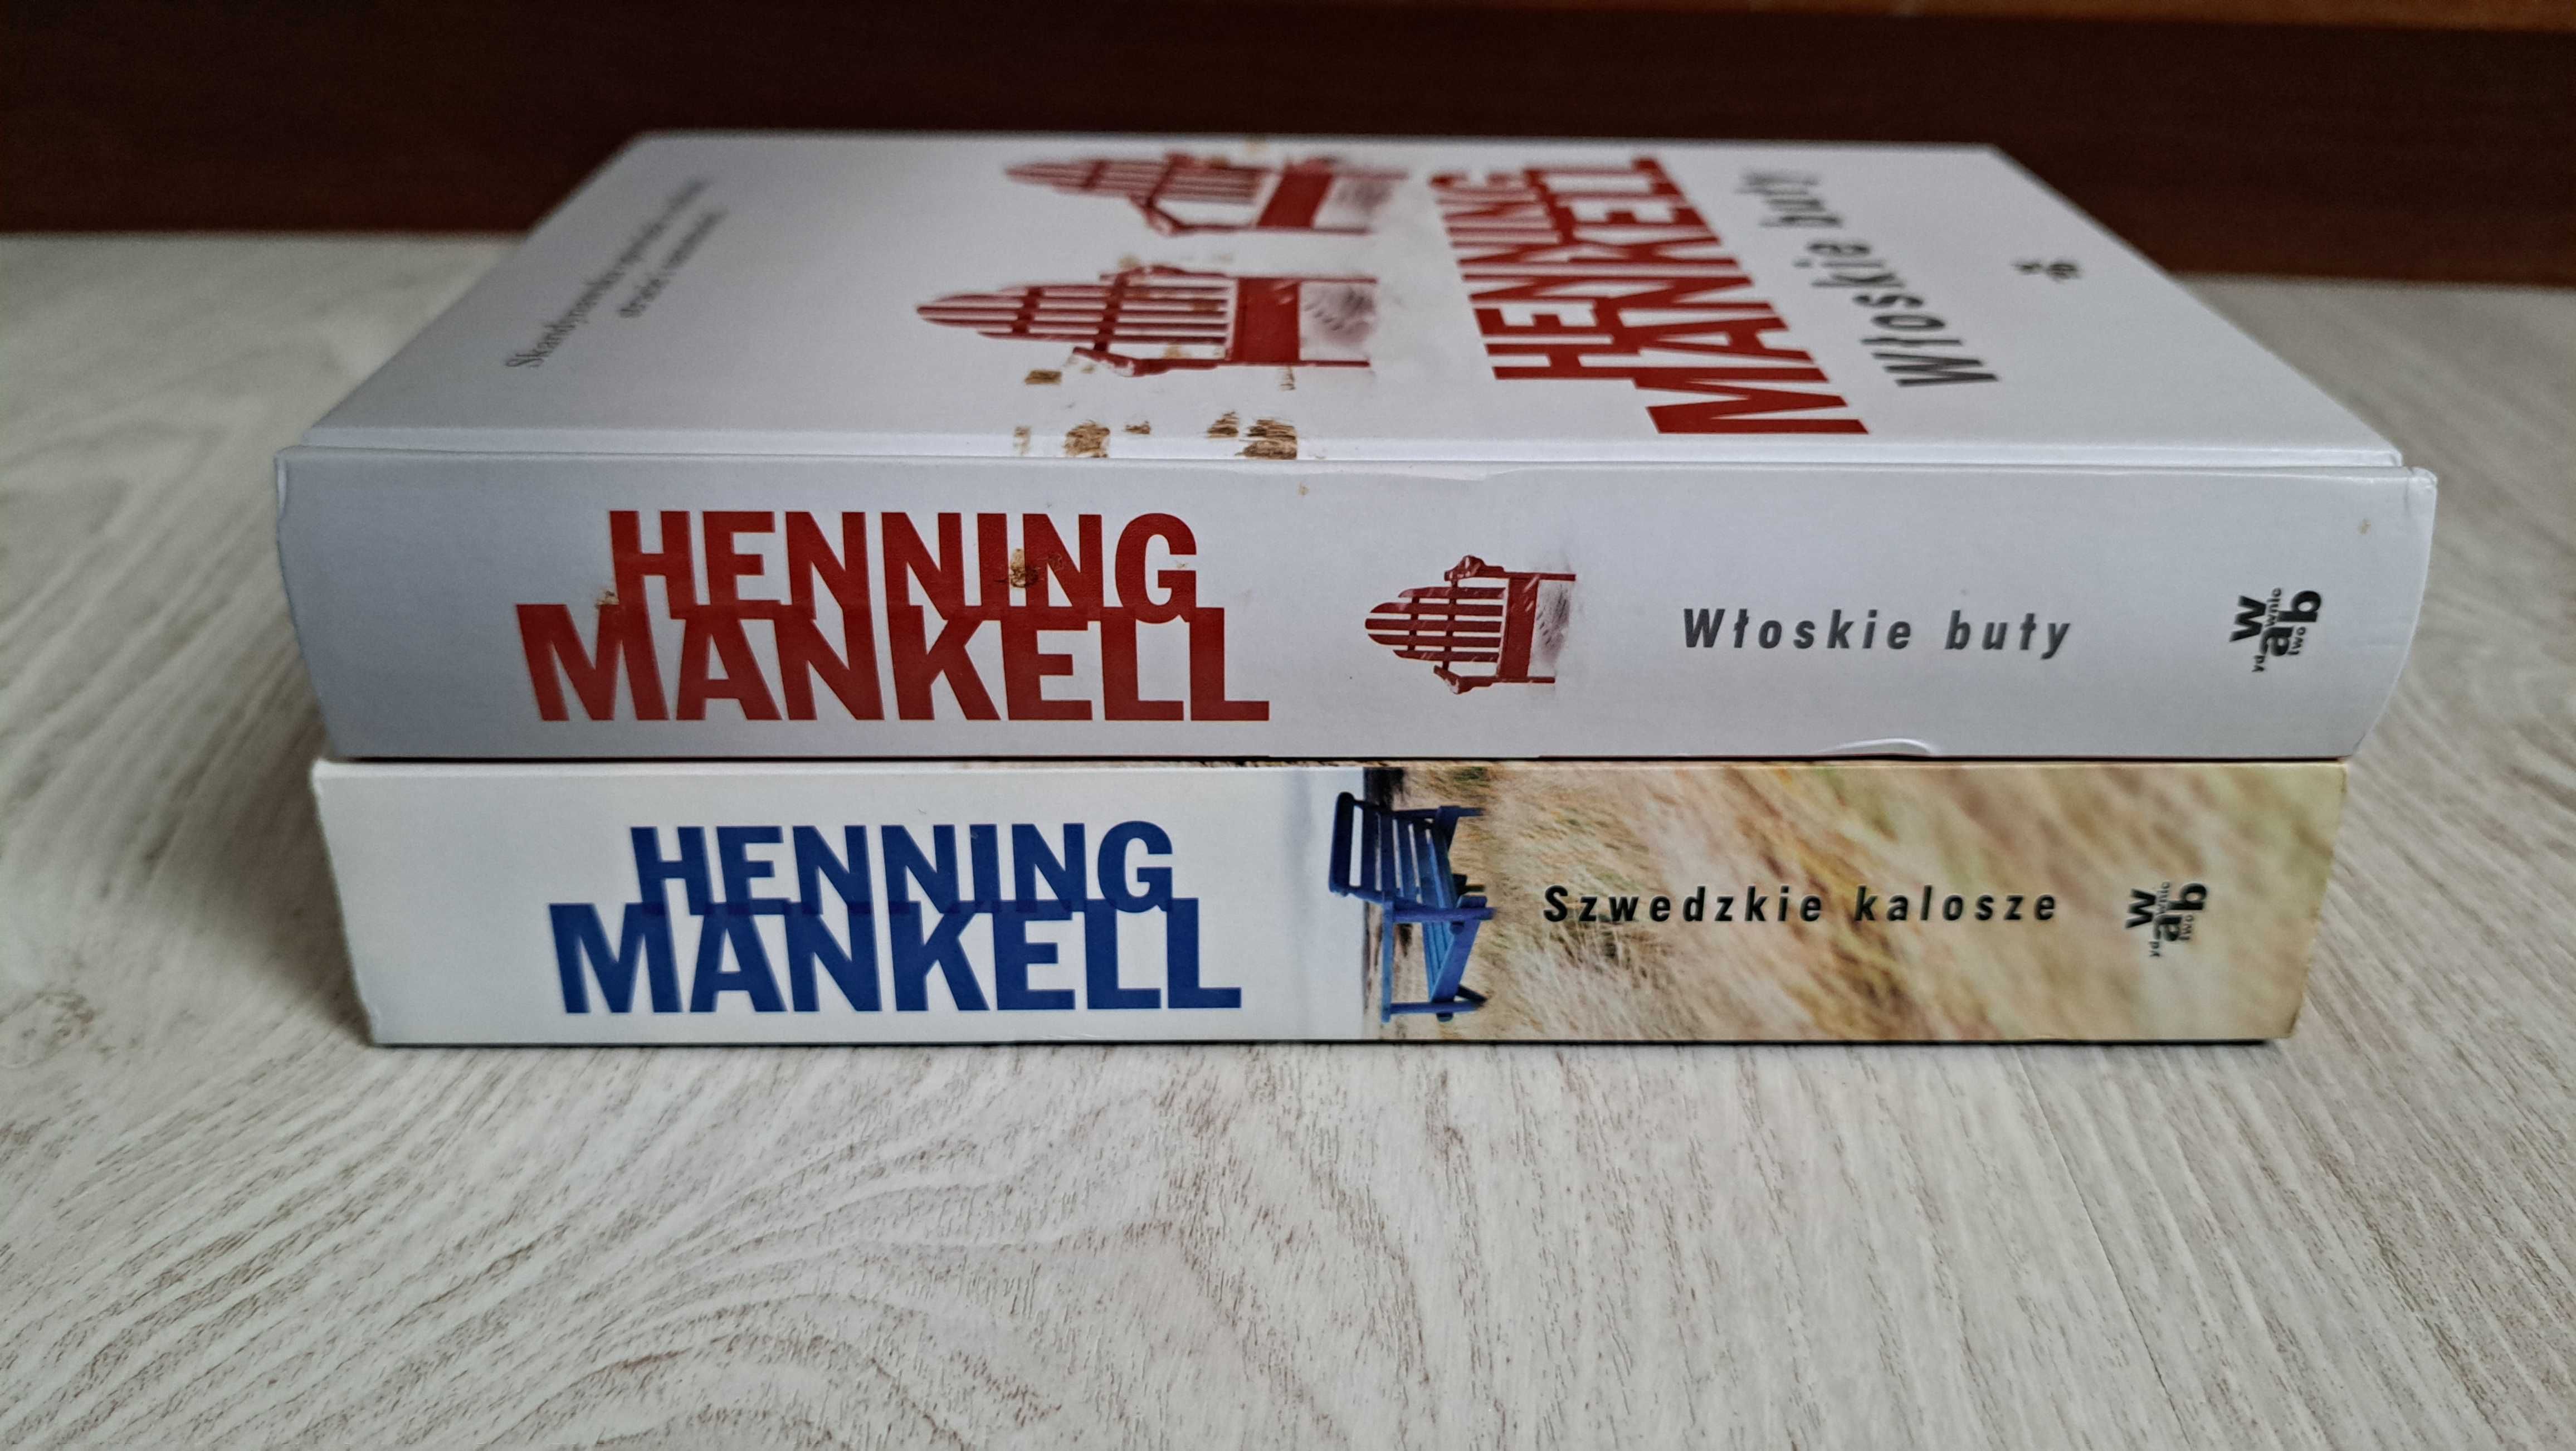 2x Henning Mankell Włoskie buty + Szwedzkie kalosze